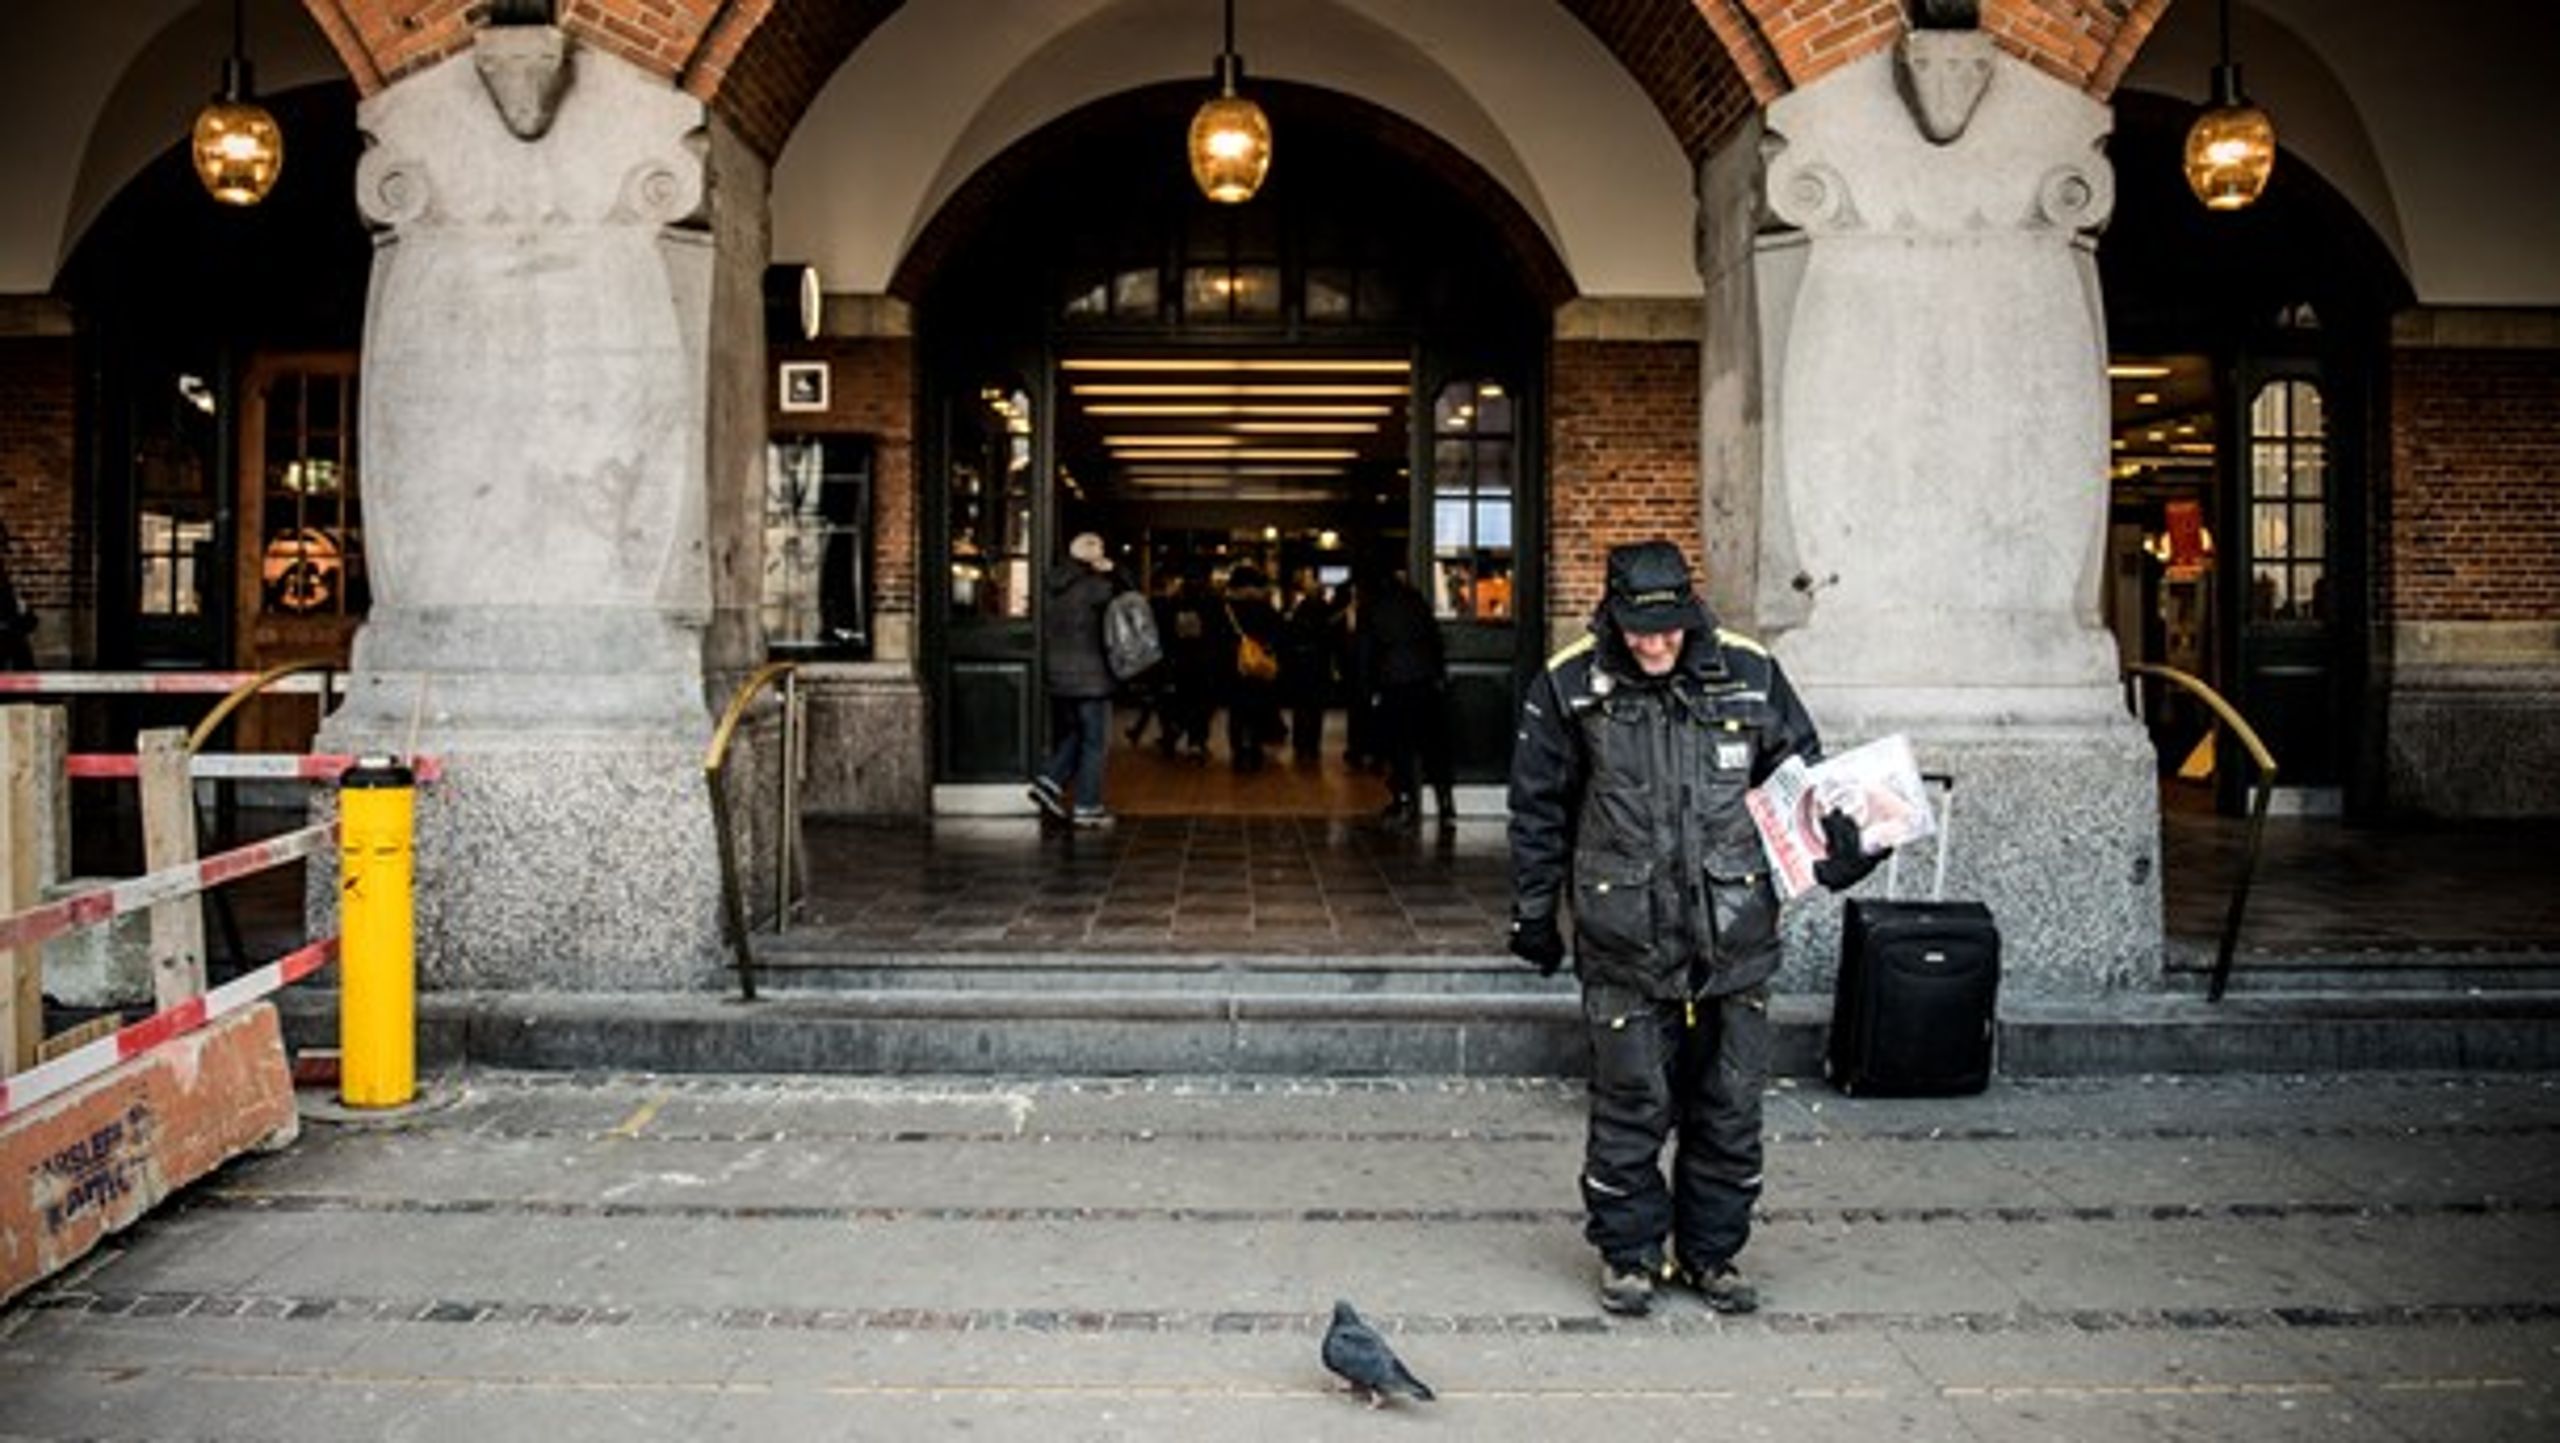 Finnerne har ganske enkelt besluttet sig for, at de vil stoppe hjemløshed. Og ikke kun fordi det kan betale sig. Det bør vi lære af, skriver formand og direktør i Hjem til Alle alliancen.